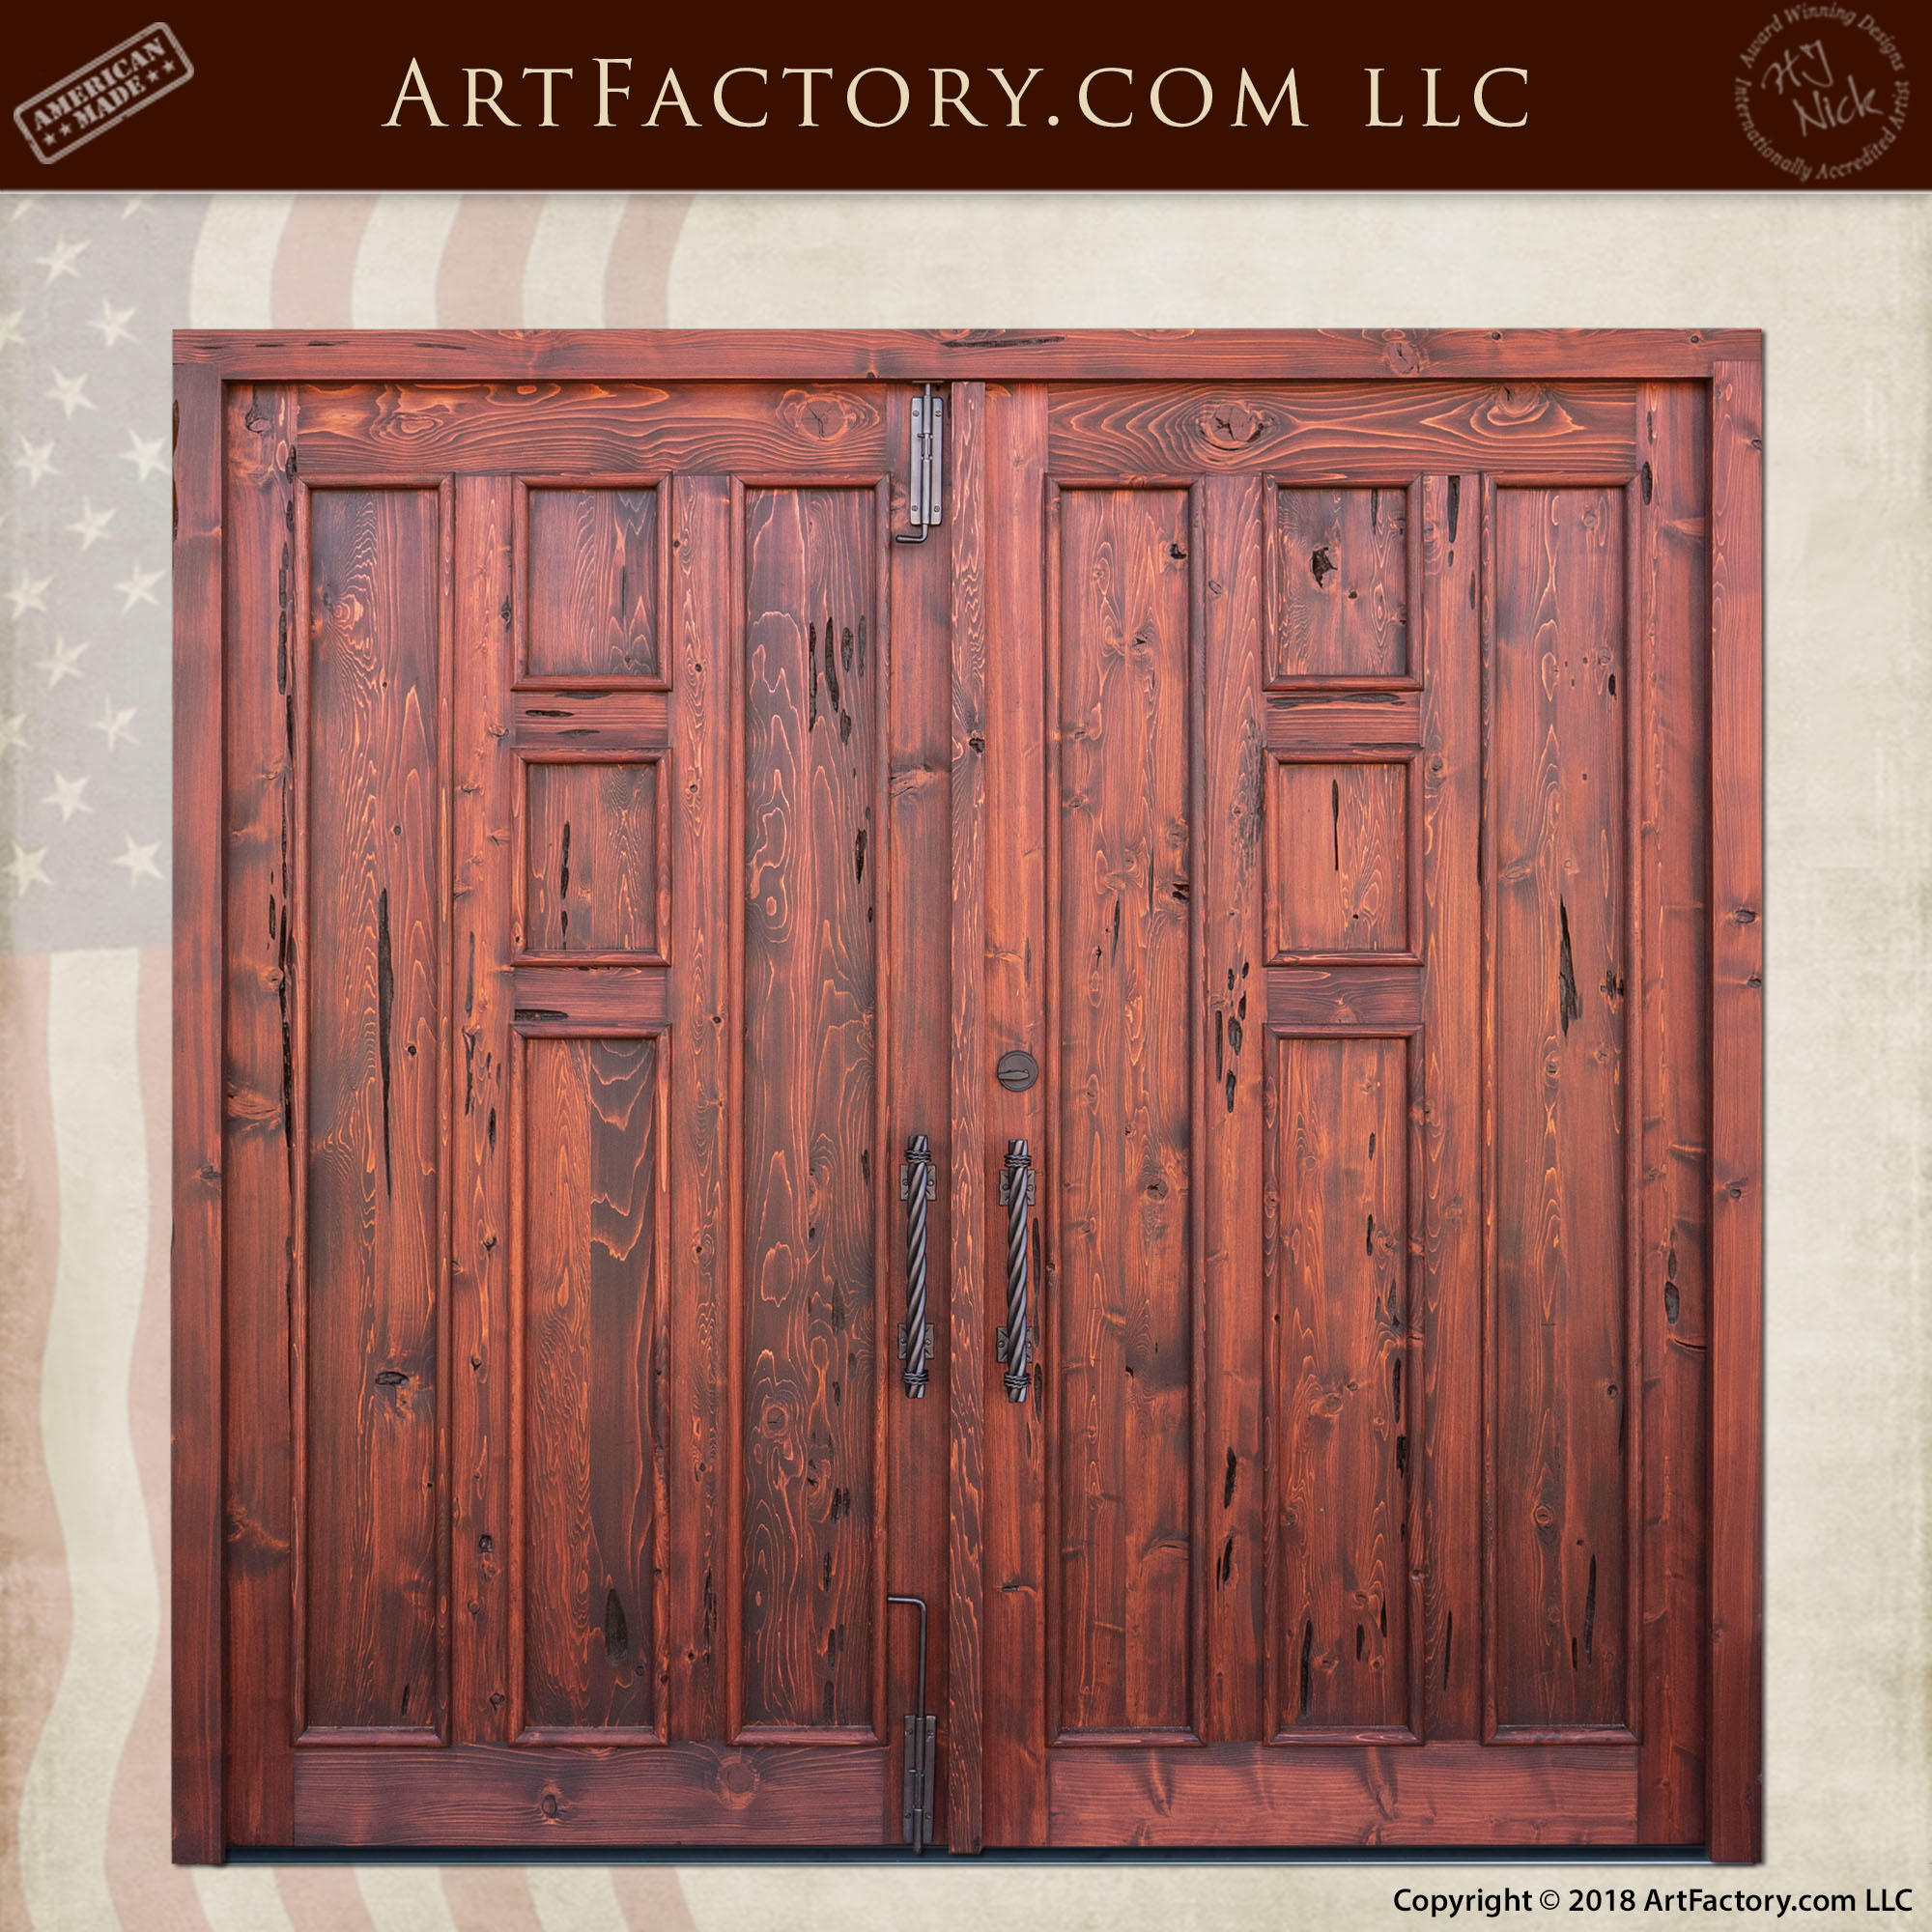 Craftsman Wood Panel Double Doors